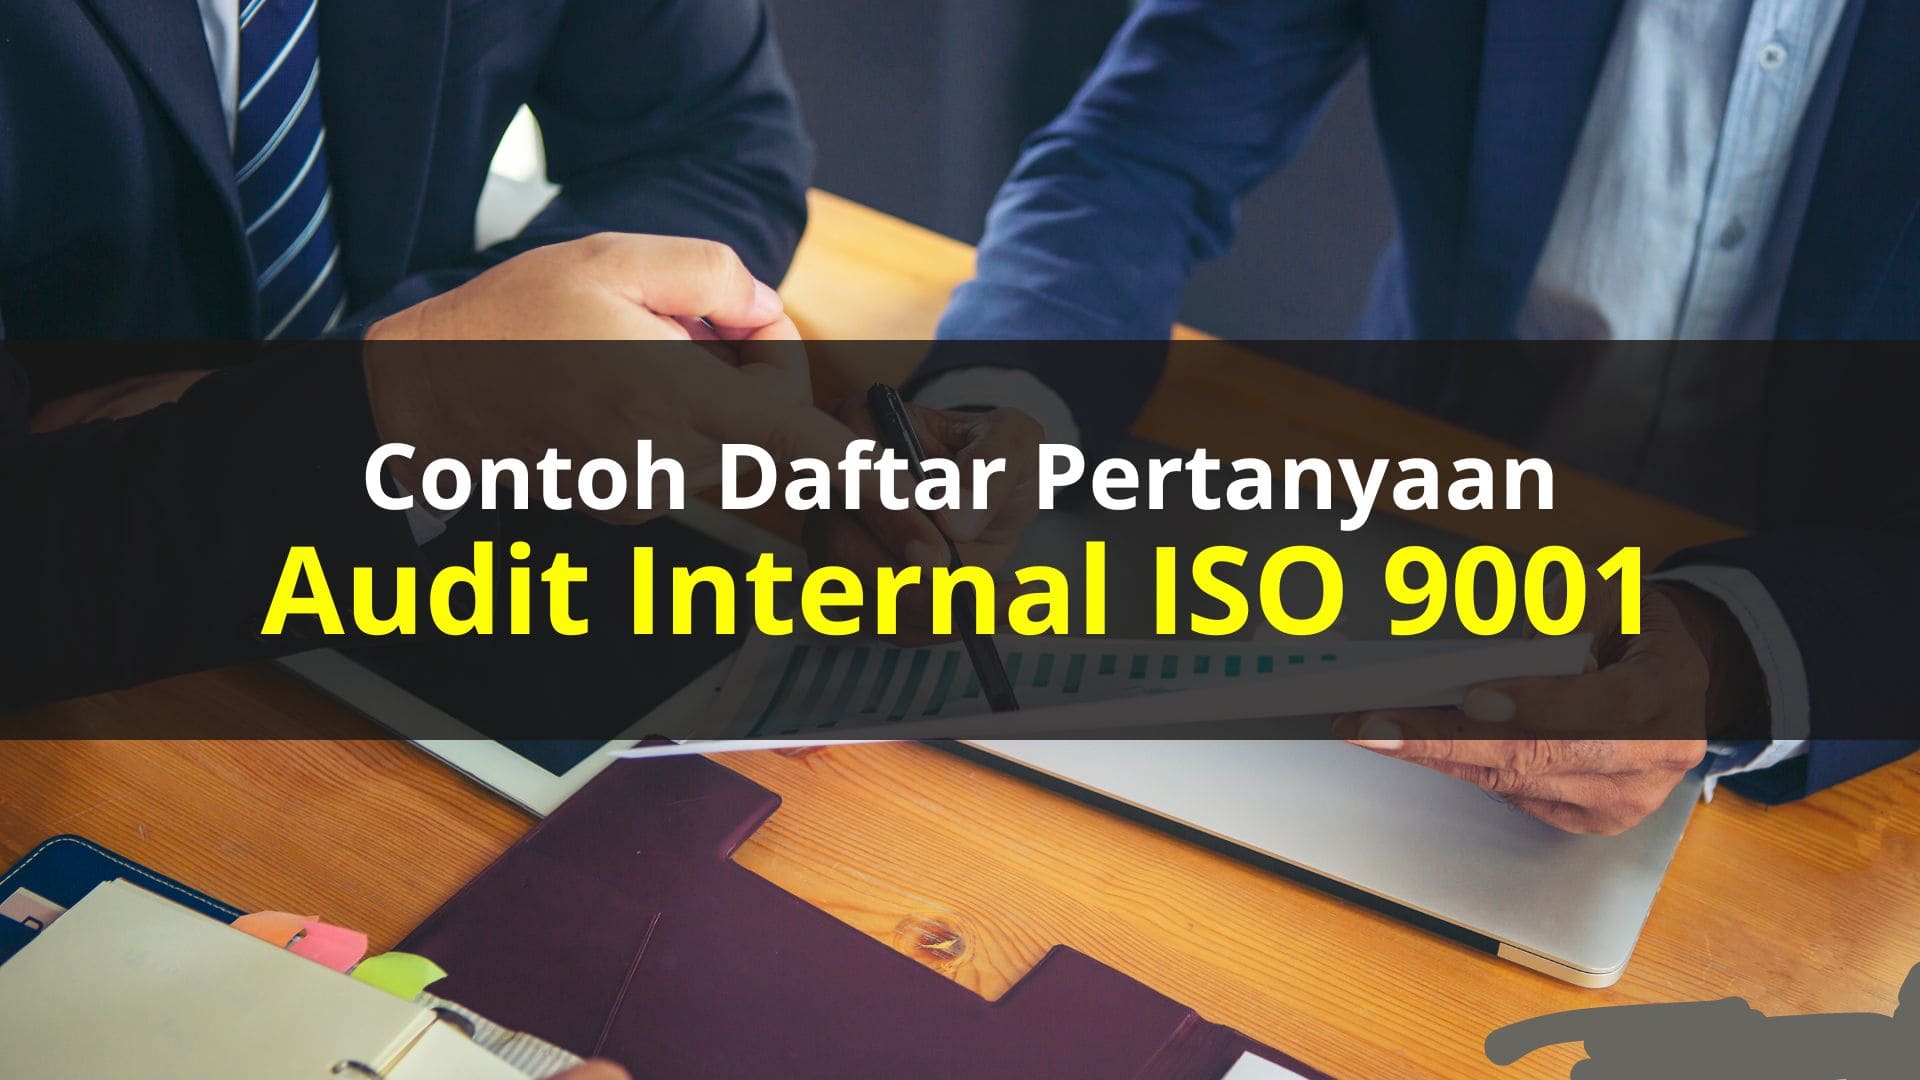 Contoh Daftar Pertanyaan Audit Internal ISO 9001:2015